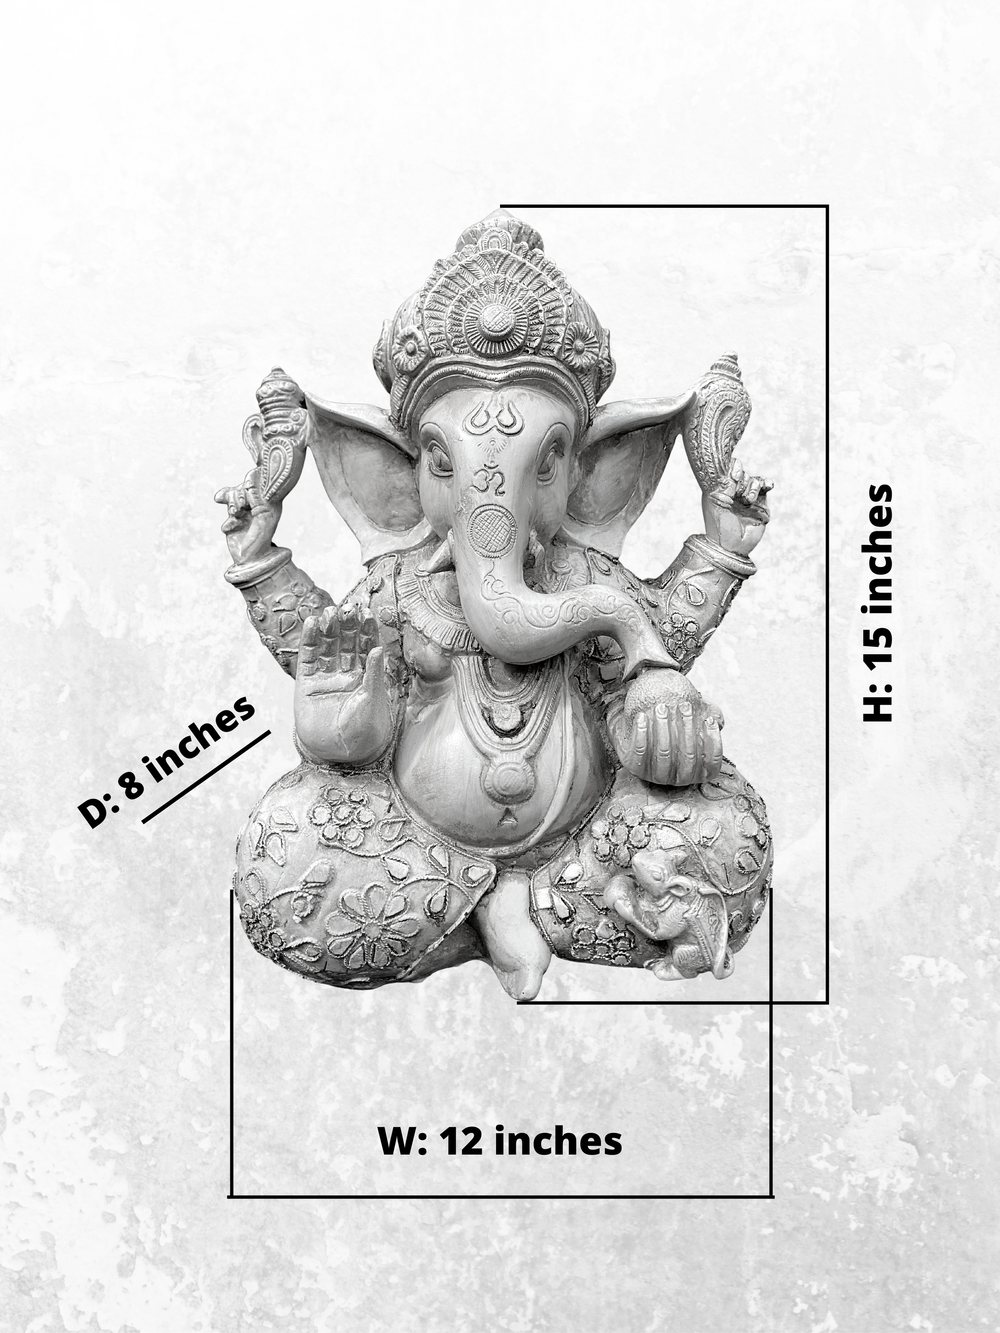 Eosnow Ganesha Elefanten-Gott-Statuen, solarbetrieben, indische  Ganesha-Idol-Figur für Auto-Armaturenbrett, Heimdekoration, Kunsthandwerk,  Gold